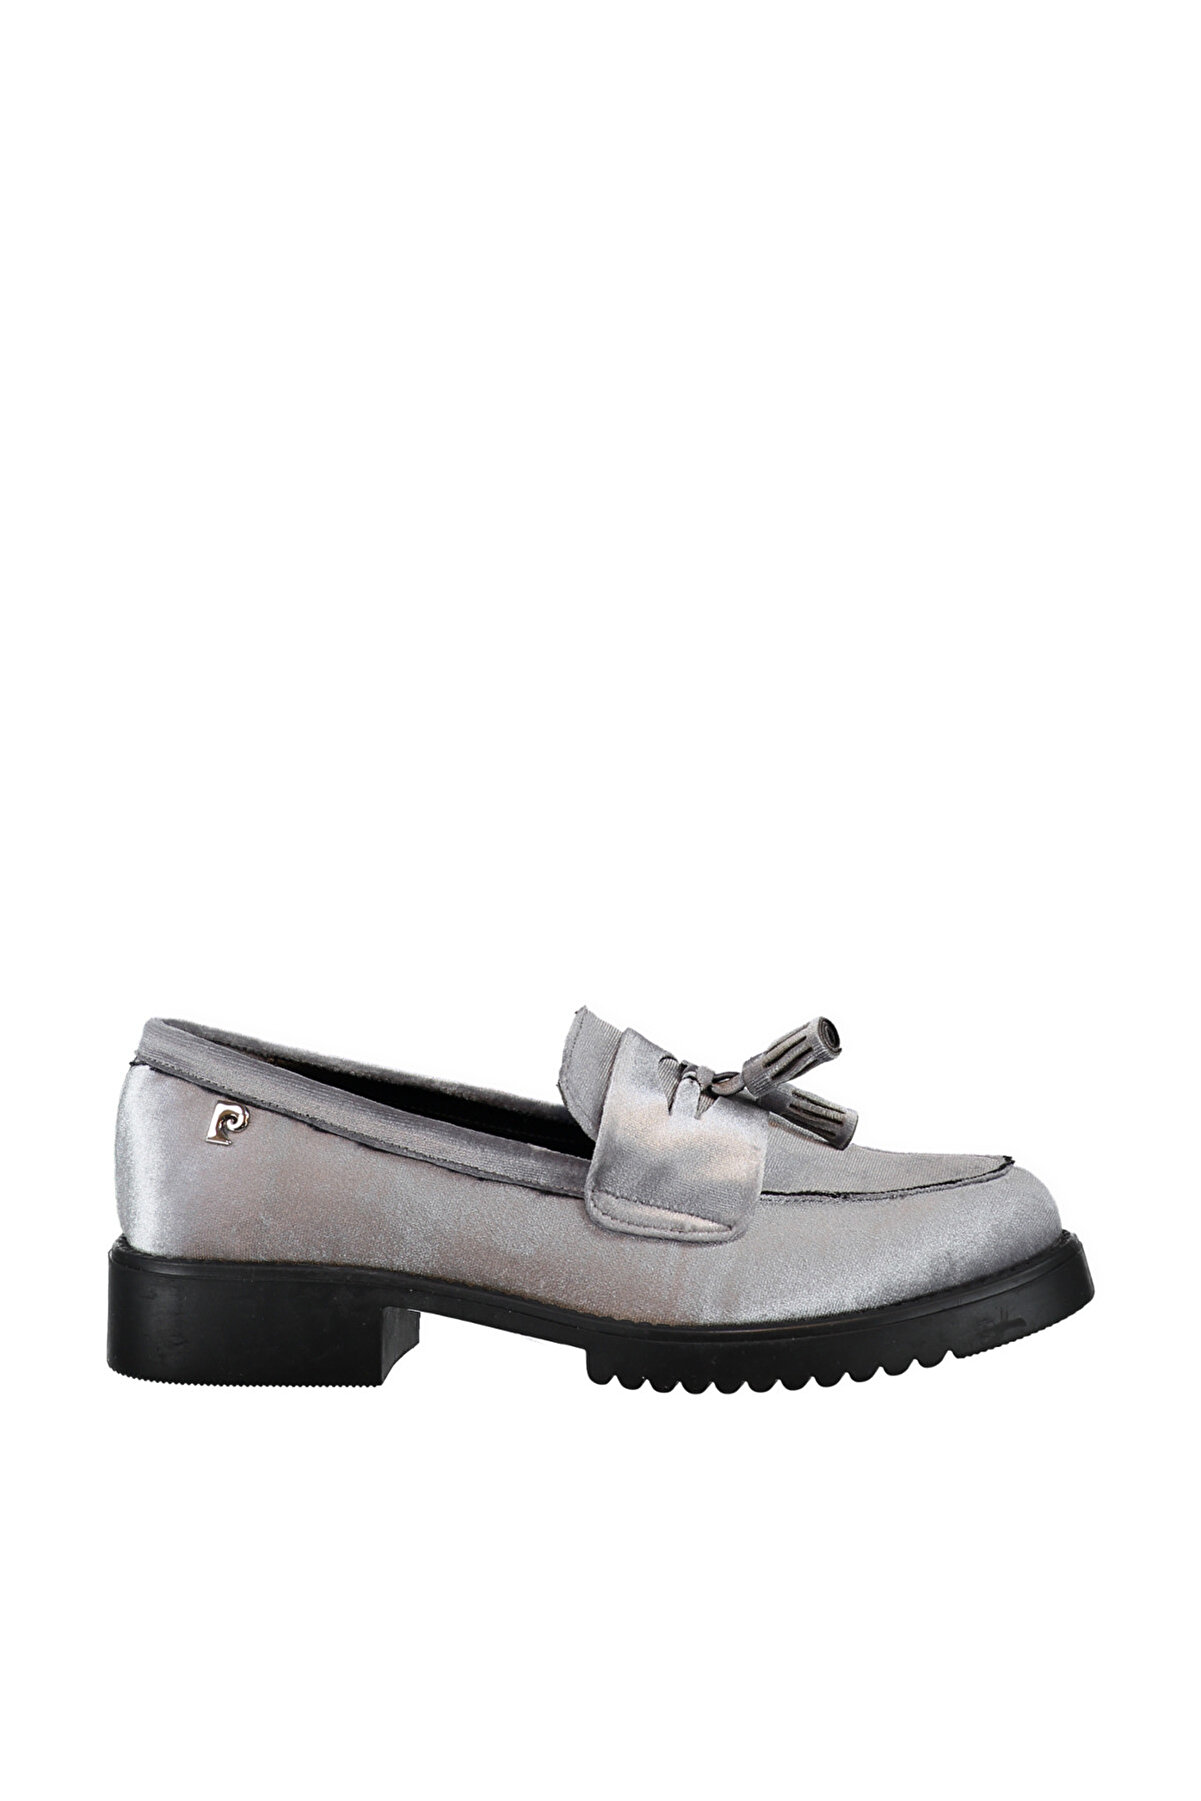 Pierre Cardin Gri Kadın Klasik Ayakkabı DSMAW18310